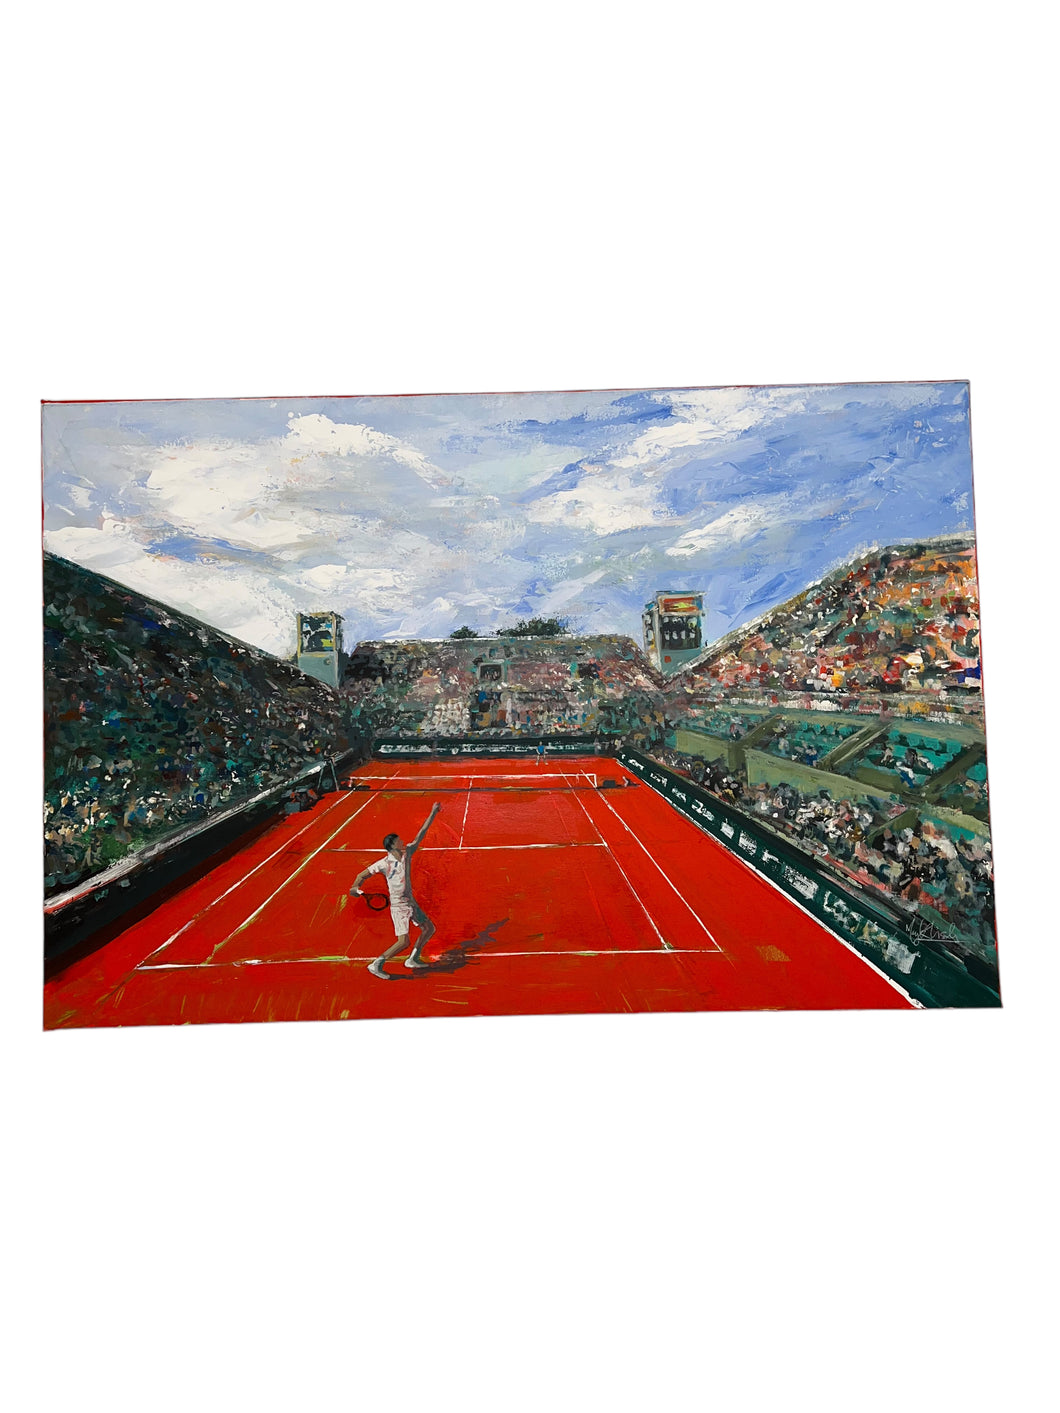 Red Tennis Court Match Wall Art